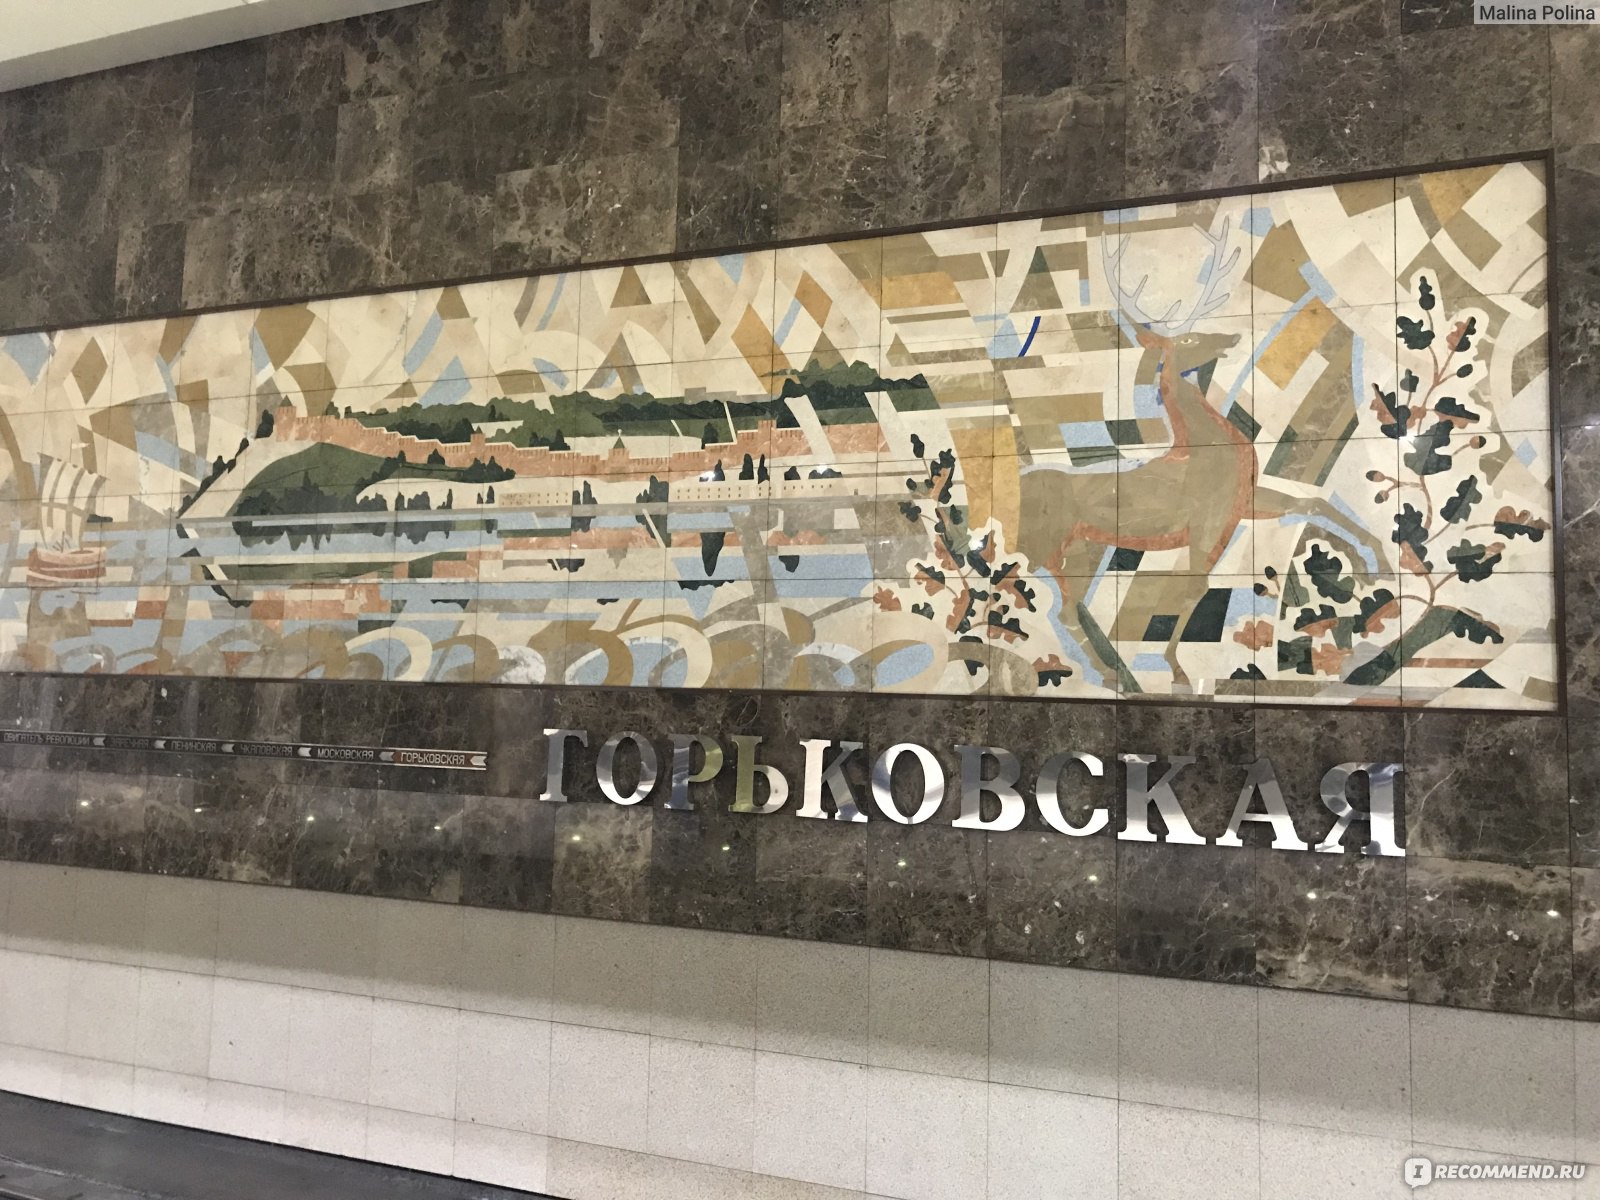 Горьковская (станция метро, Нижний Новгород)